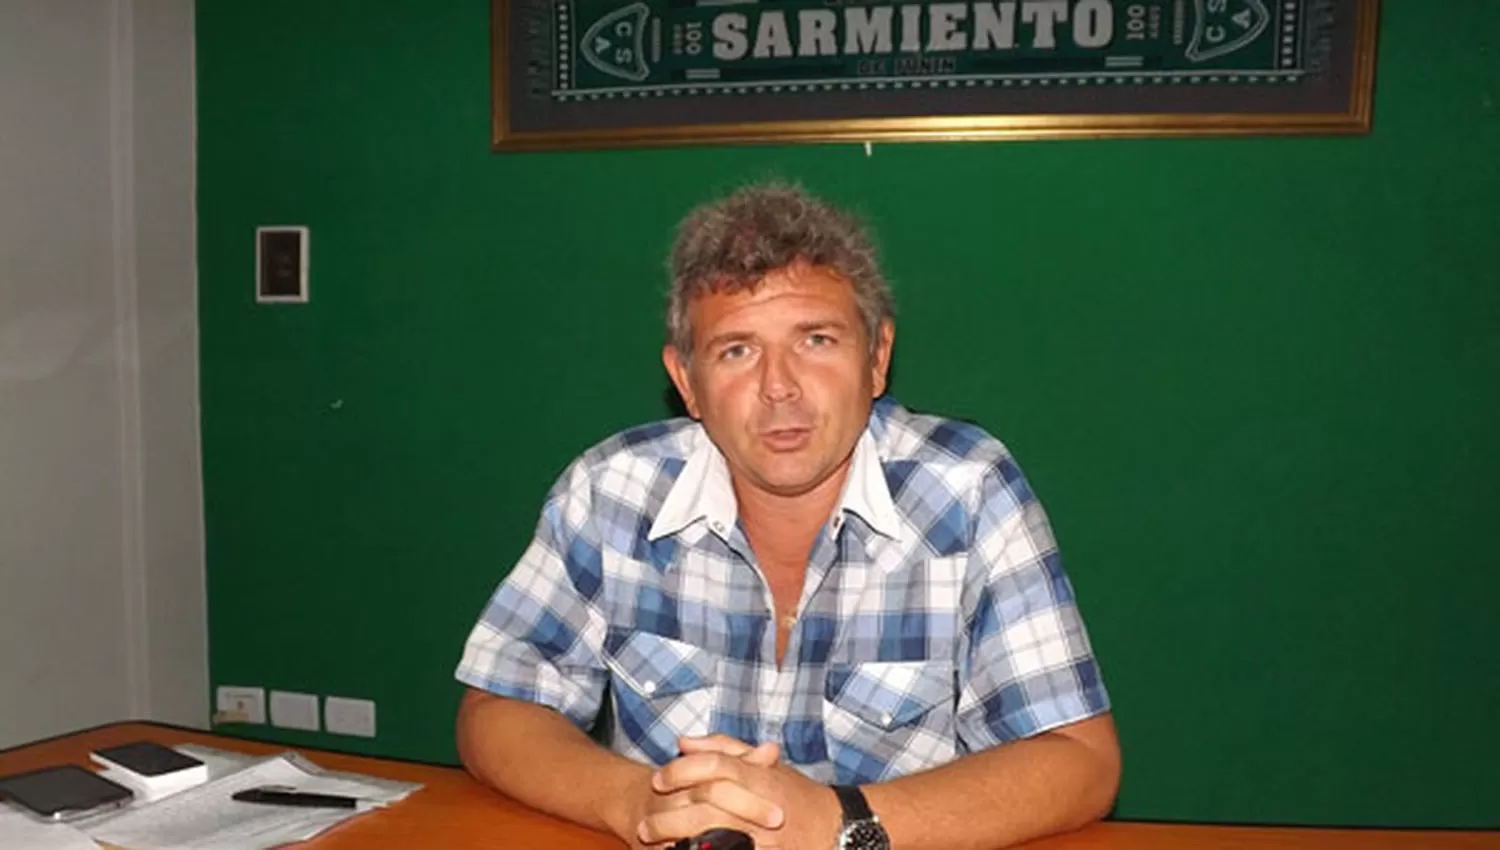 Fernando Chiófalo fue reelecto el año pasado y tiene mandato hasta 2019 en Sarmiento.
FOTO TOMADA DE DIARIO DEMOCRACIA